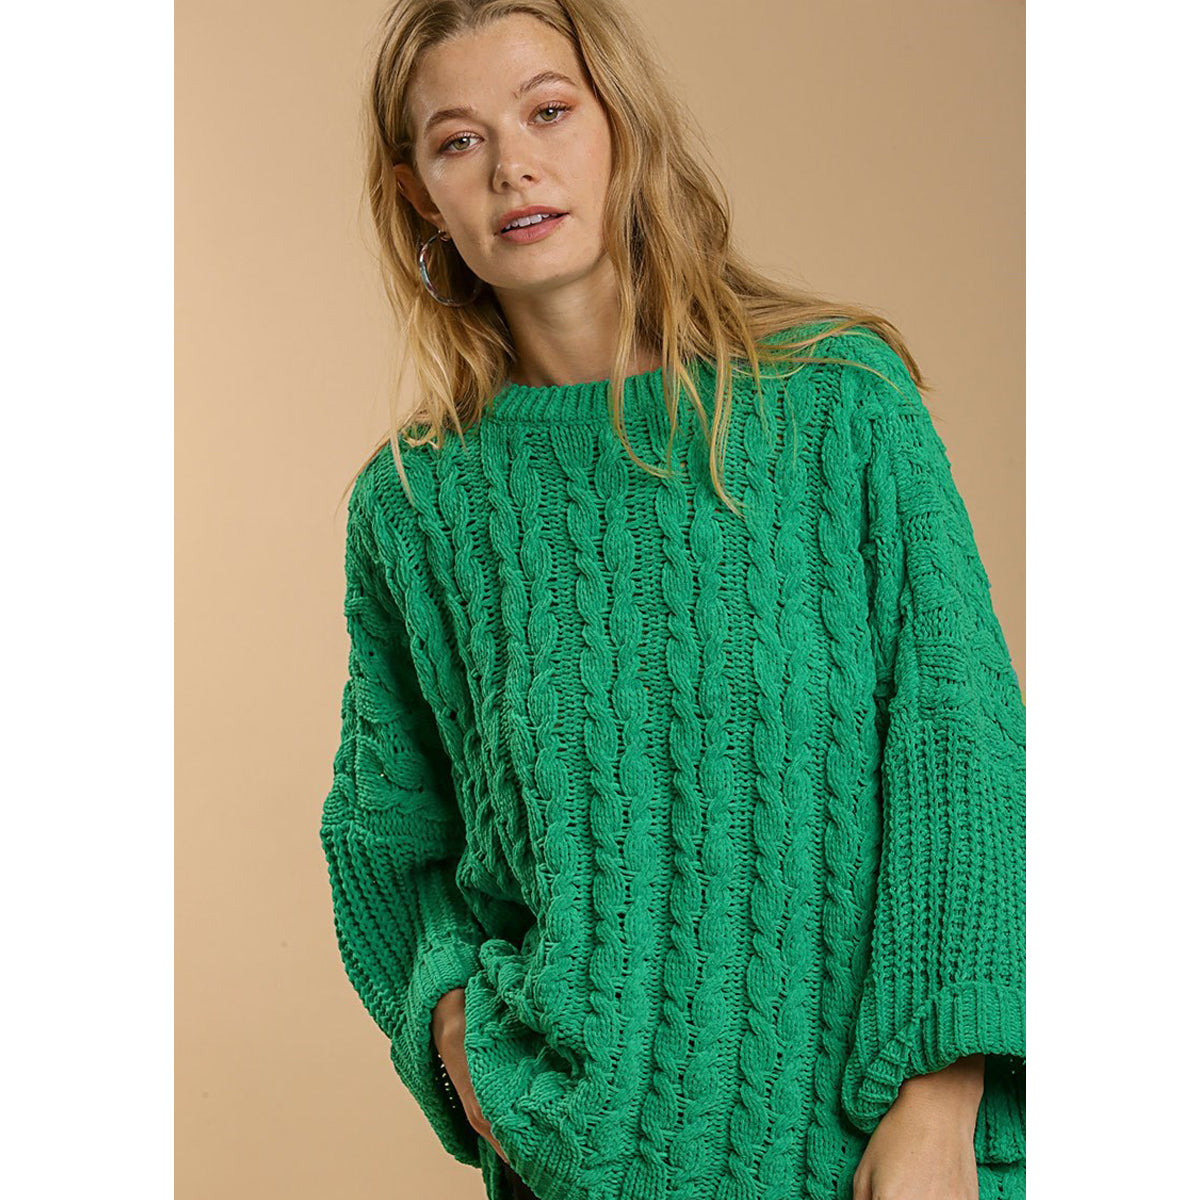 Women wearing green sweater